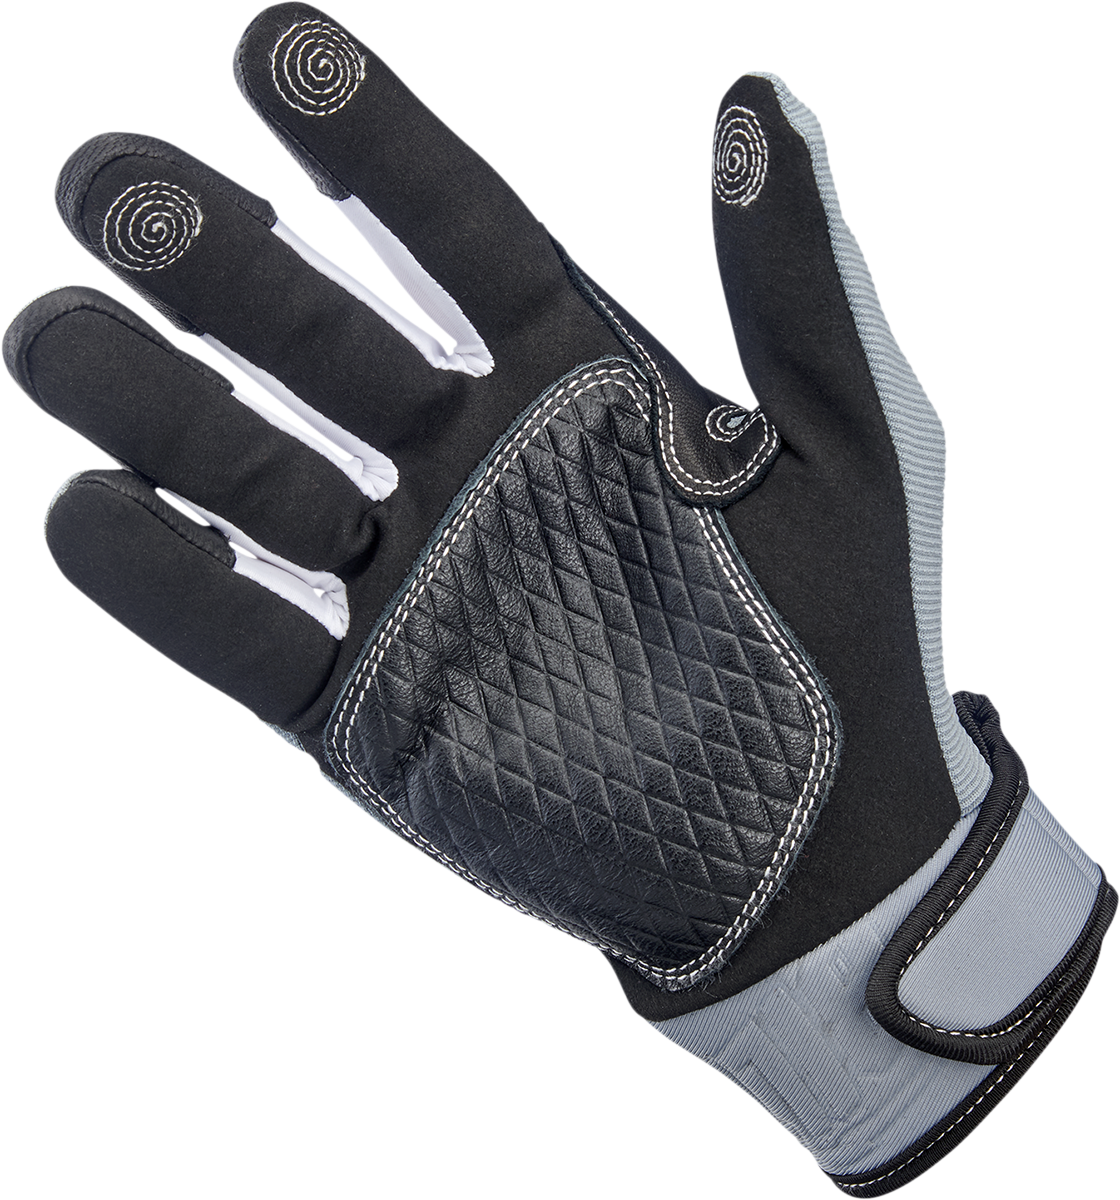 BILTWELL Baja Gloves - Gray/Black